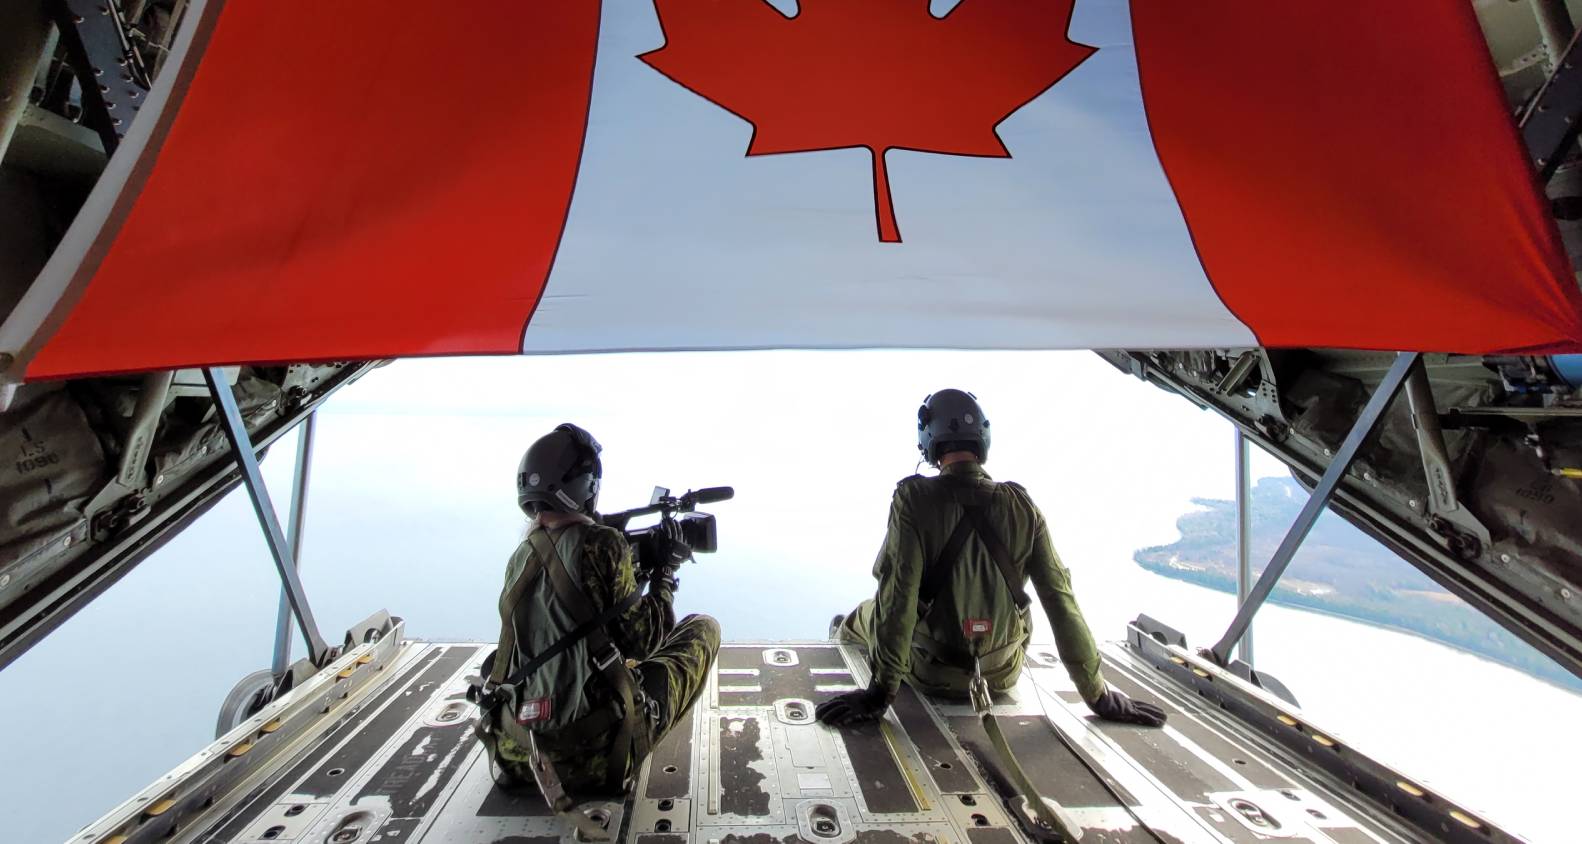 Soldats avec un drapeau Canadien